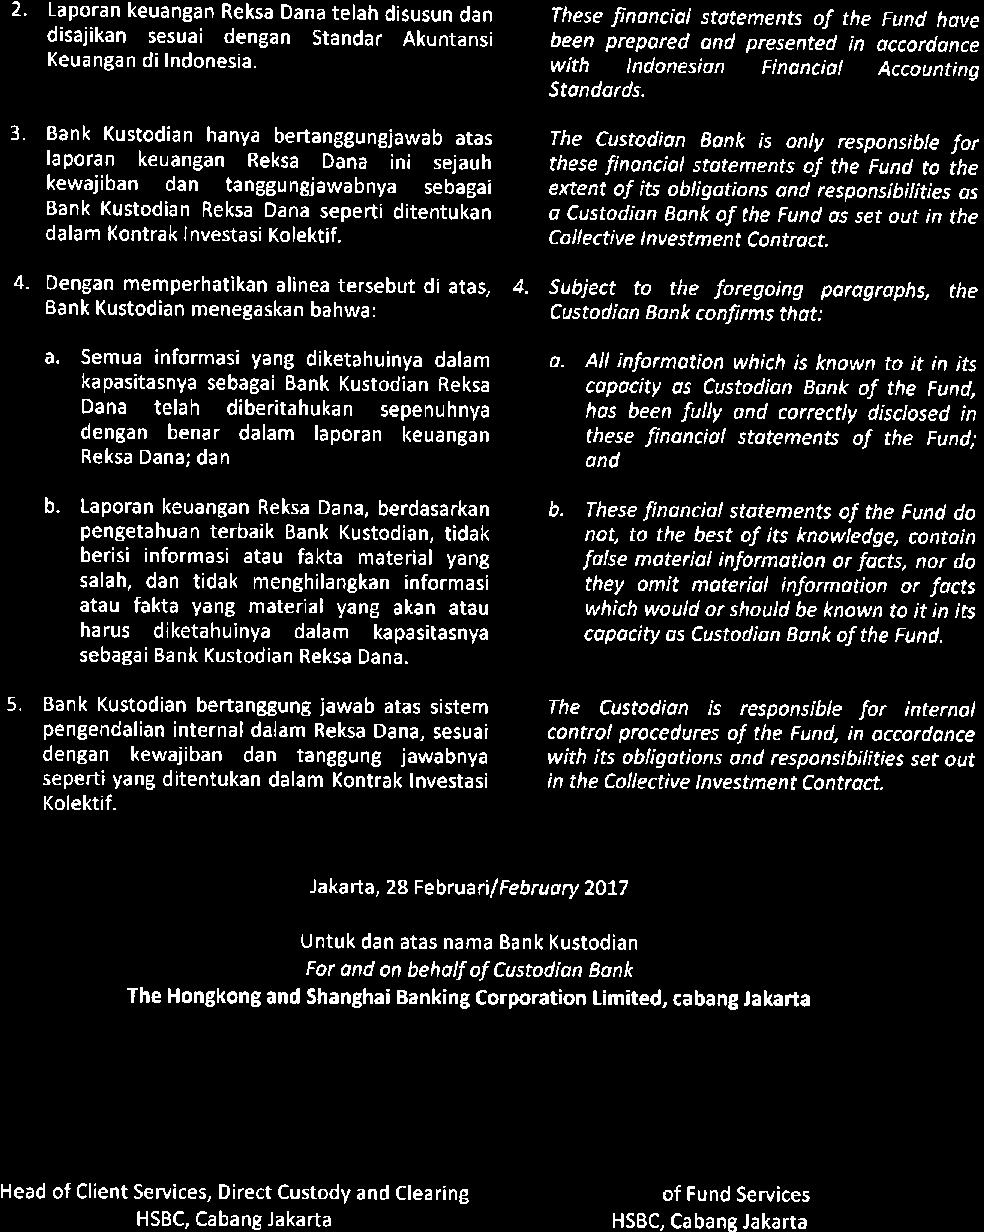 a Laporan keuangan Reksa Dana telah disusun dan disajikan sesuai dengan Standar Akuntansi Keua nga n di Indonesia.